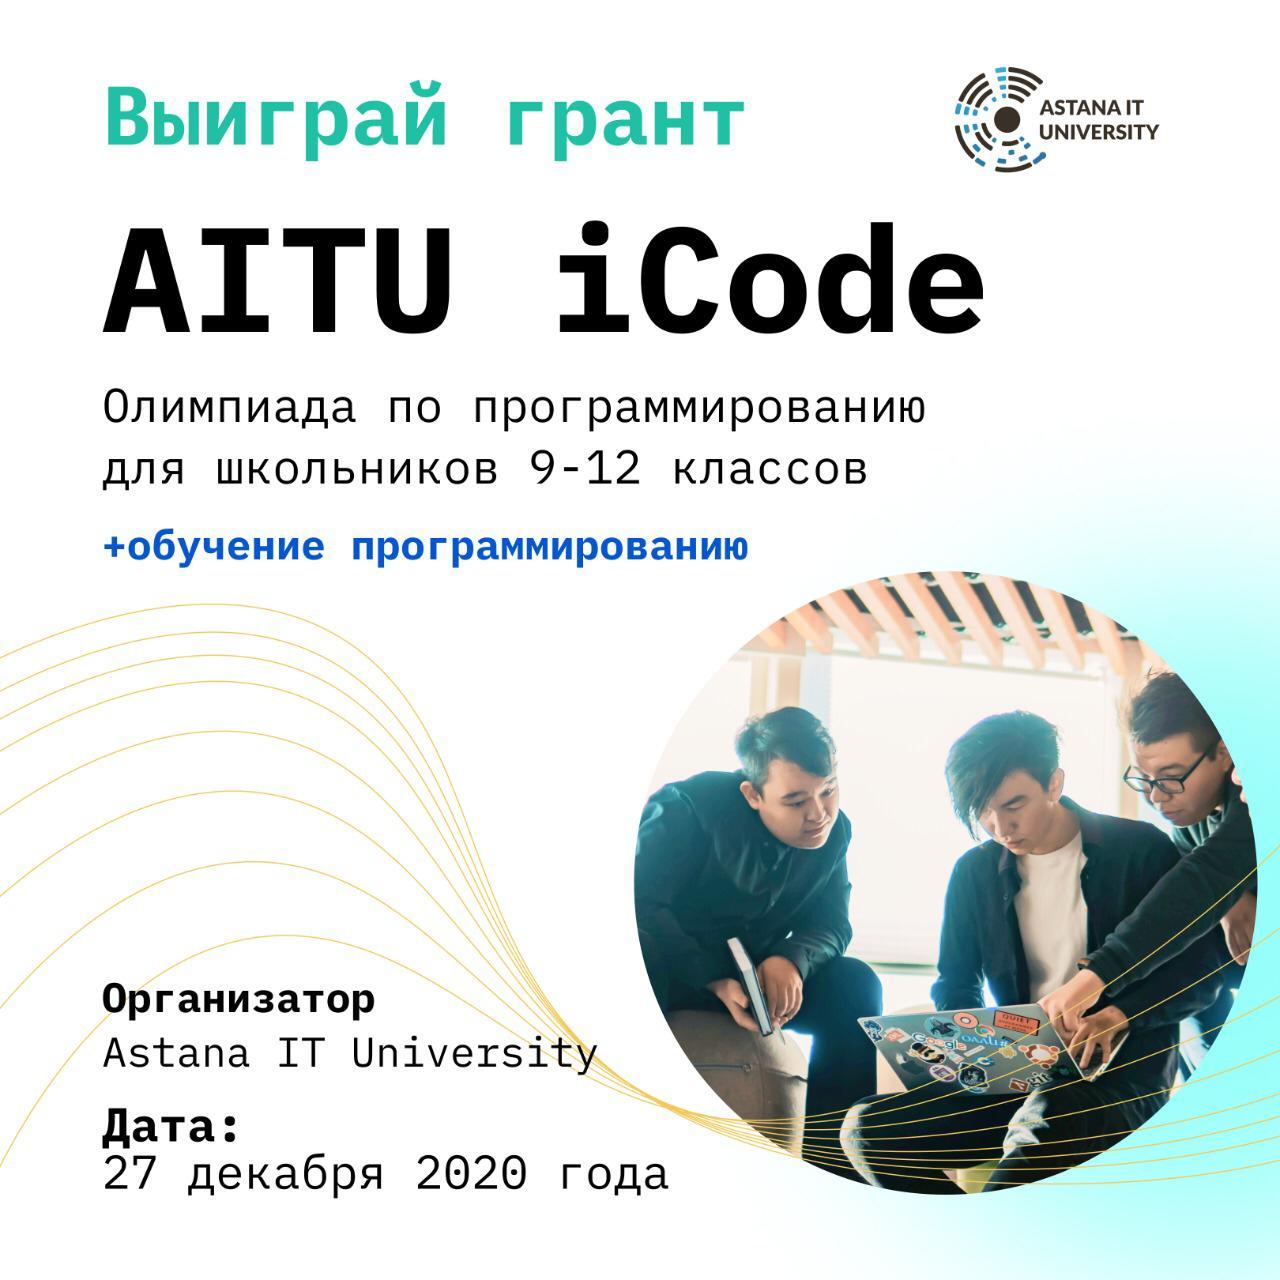 Информация об олимпиаде iCode AITU